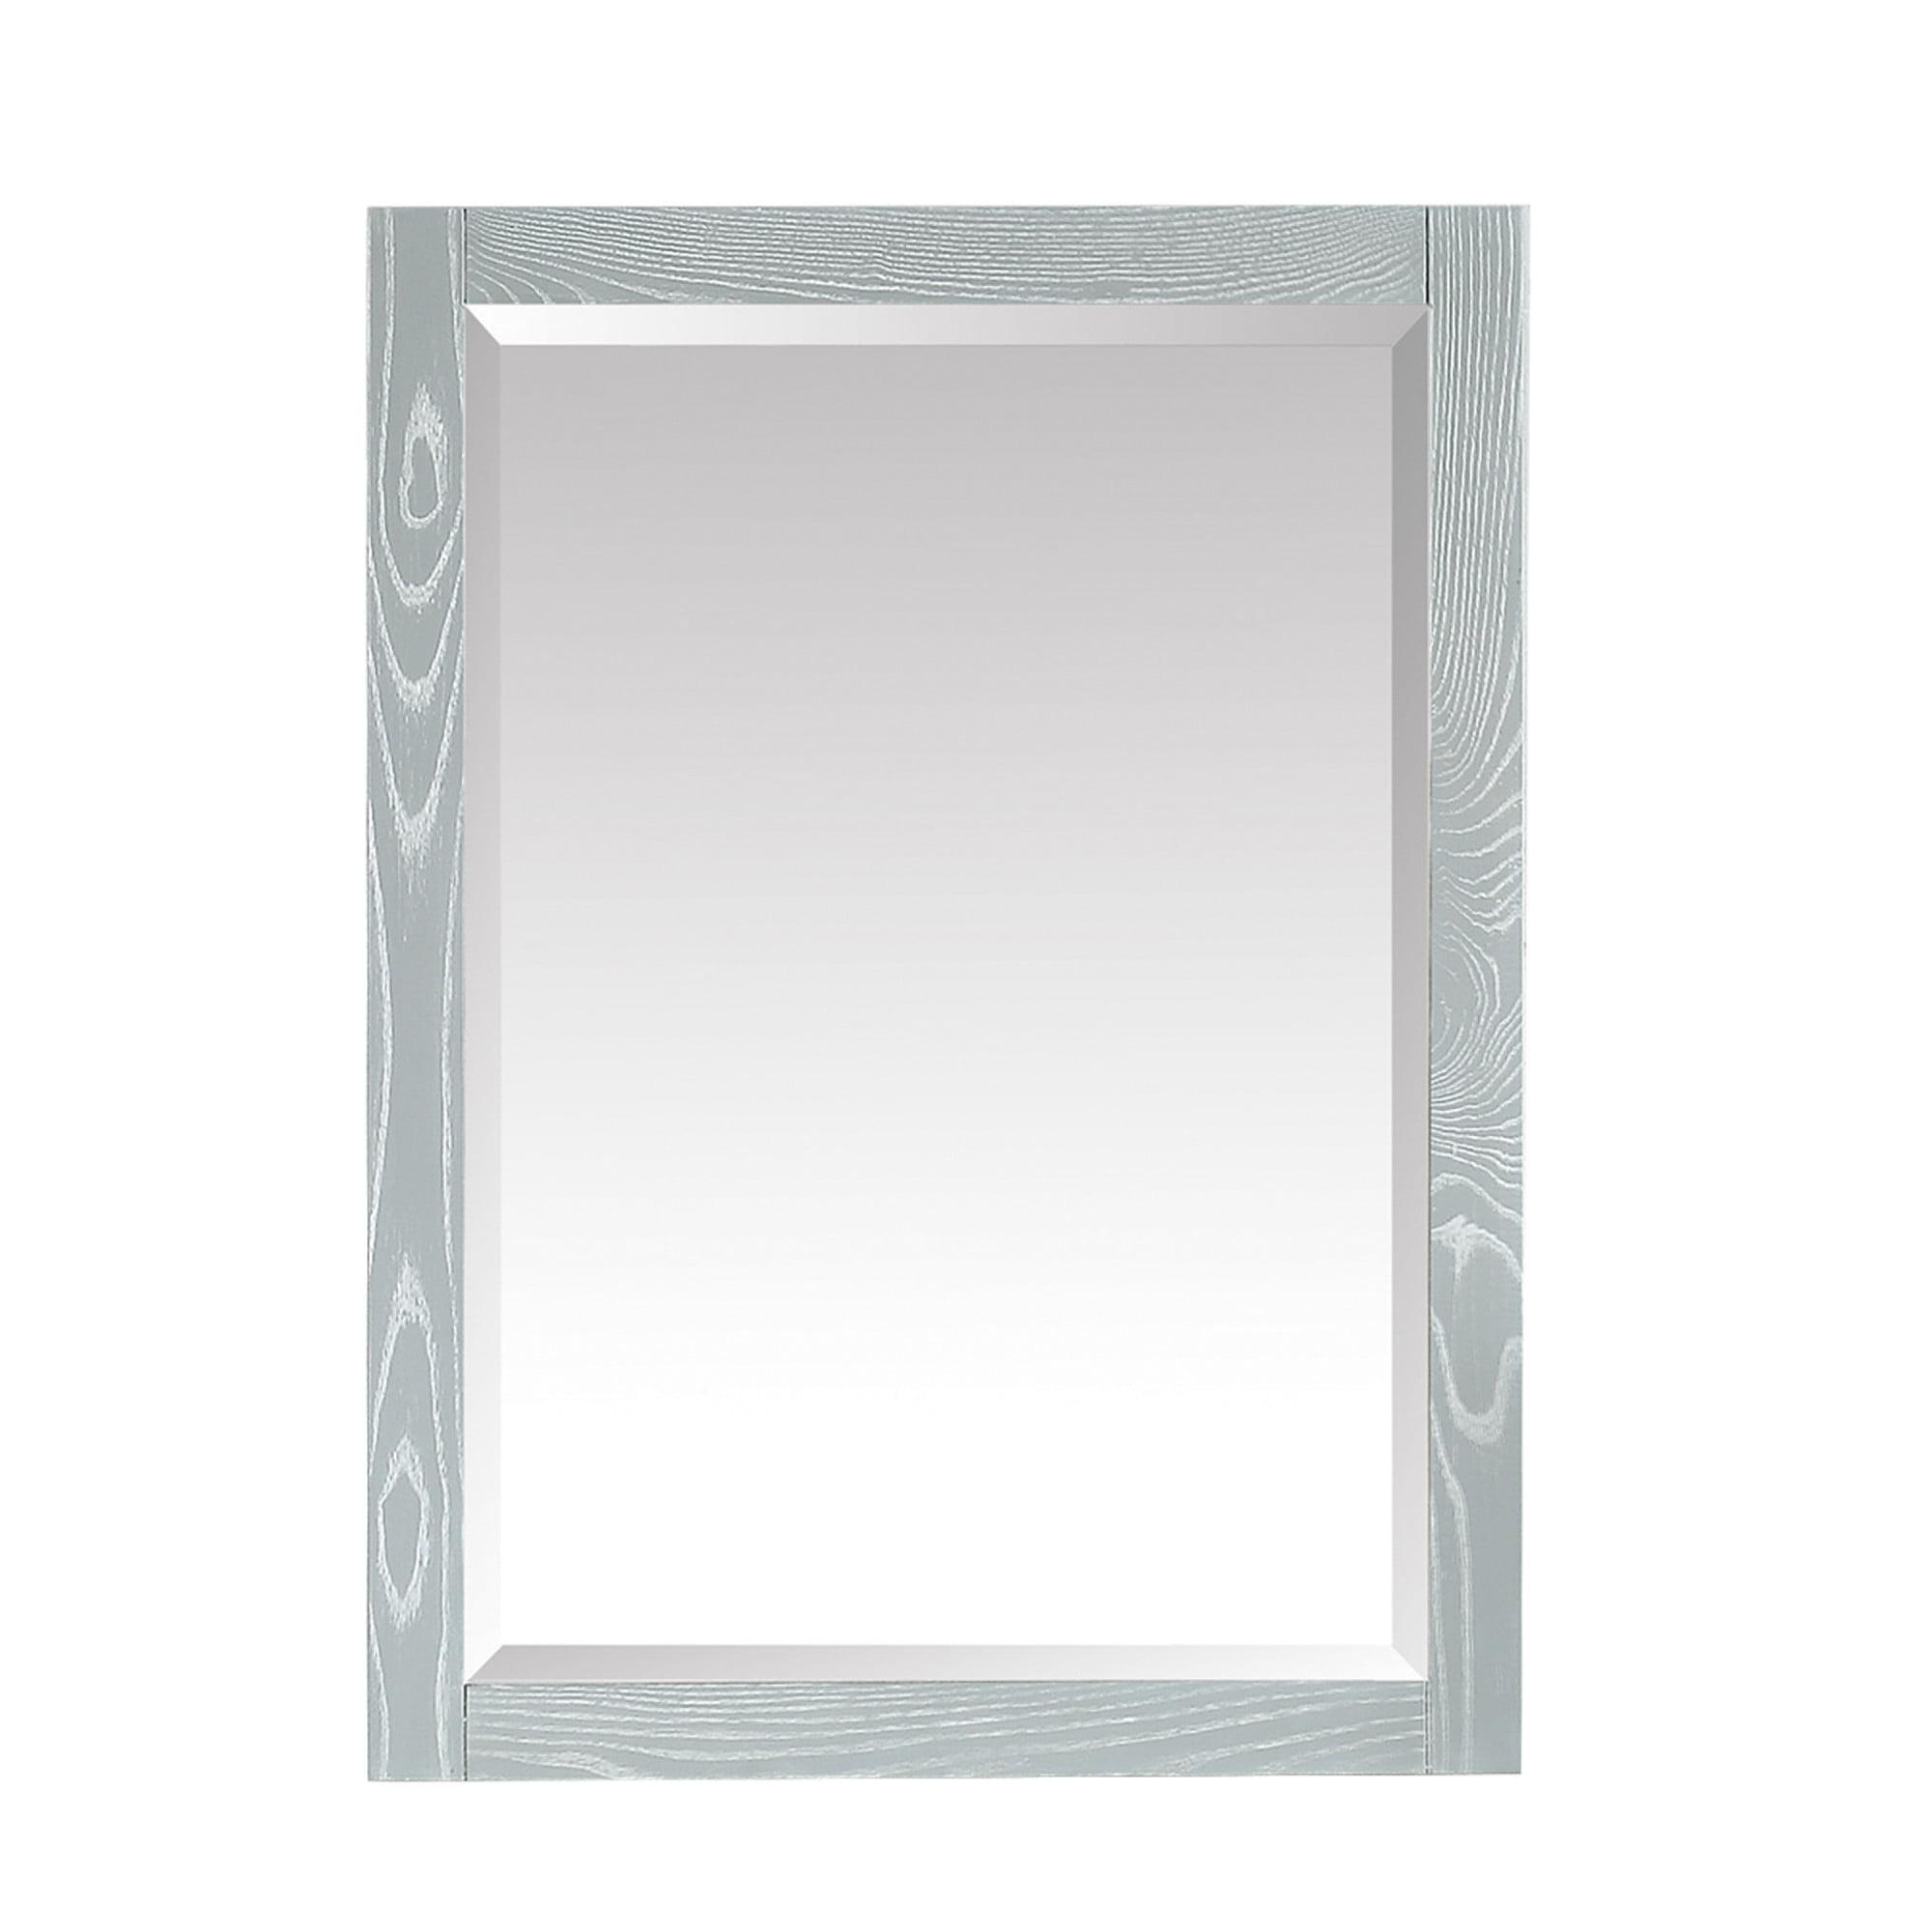 Contemporary Sea Salt Gray Wood Bathroom Vanity Mirror 32" x 24"